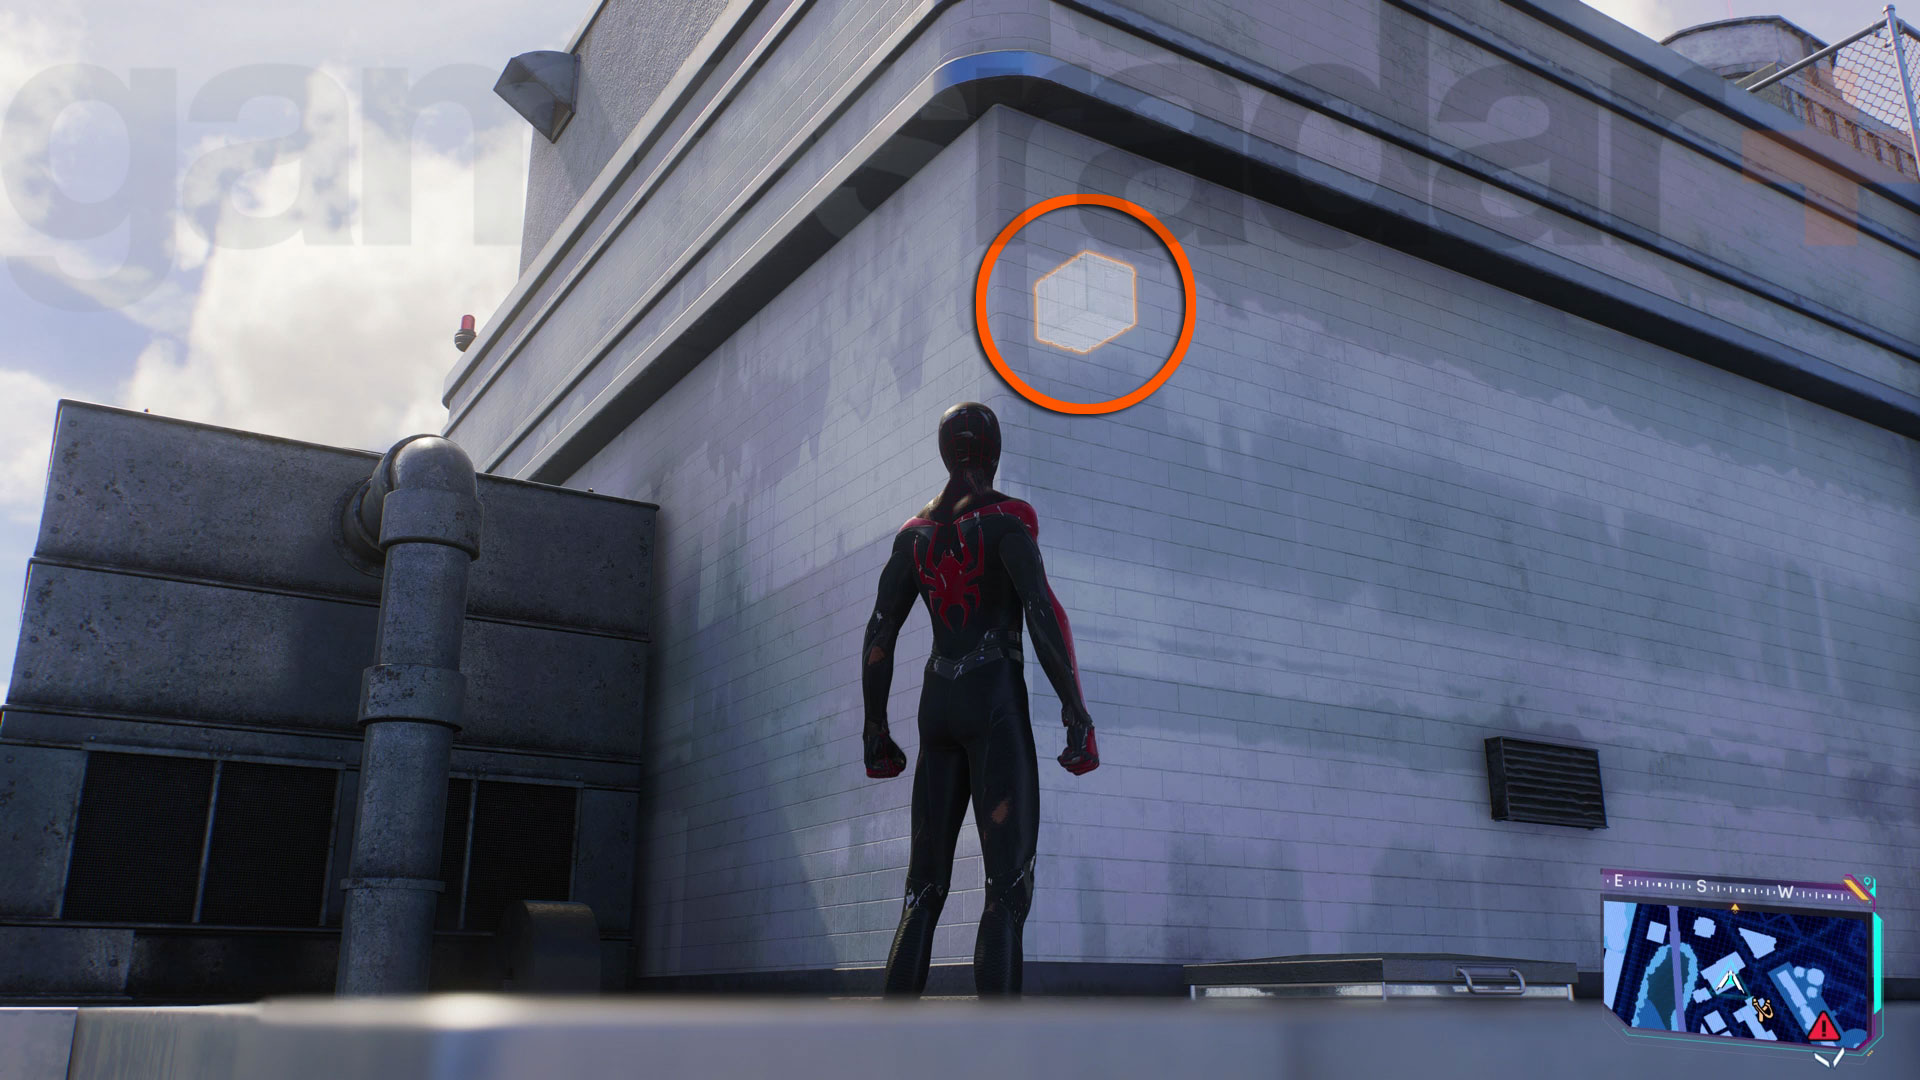 Сканирование технических ящиков Spider-Man 2 Tech Crates сквозь стены